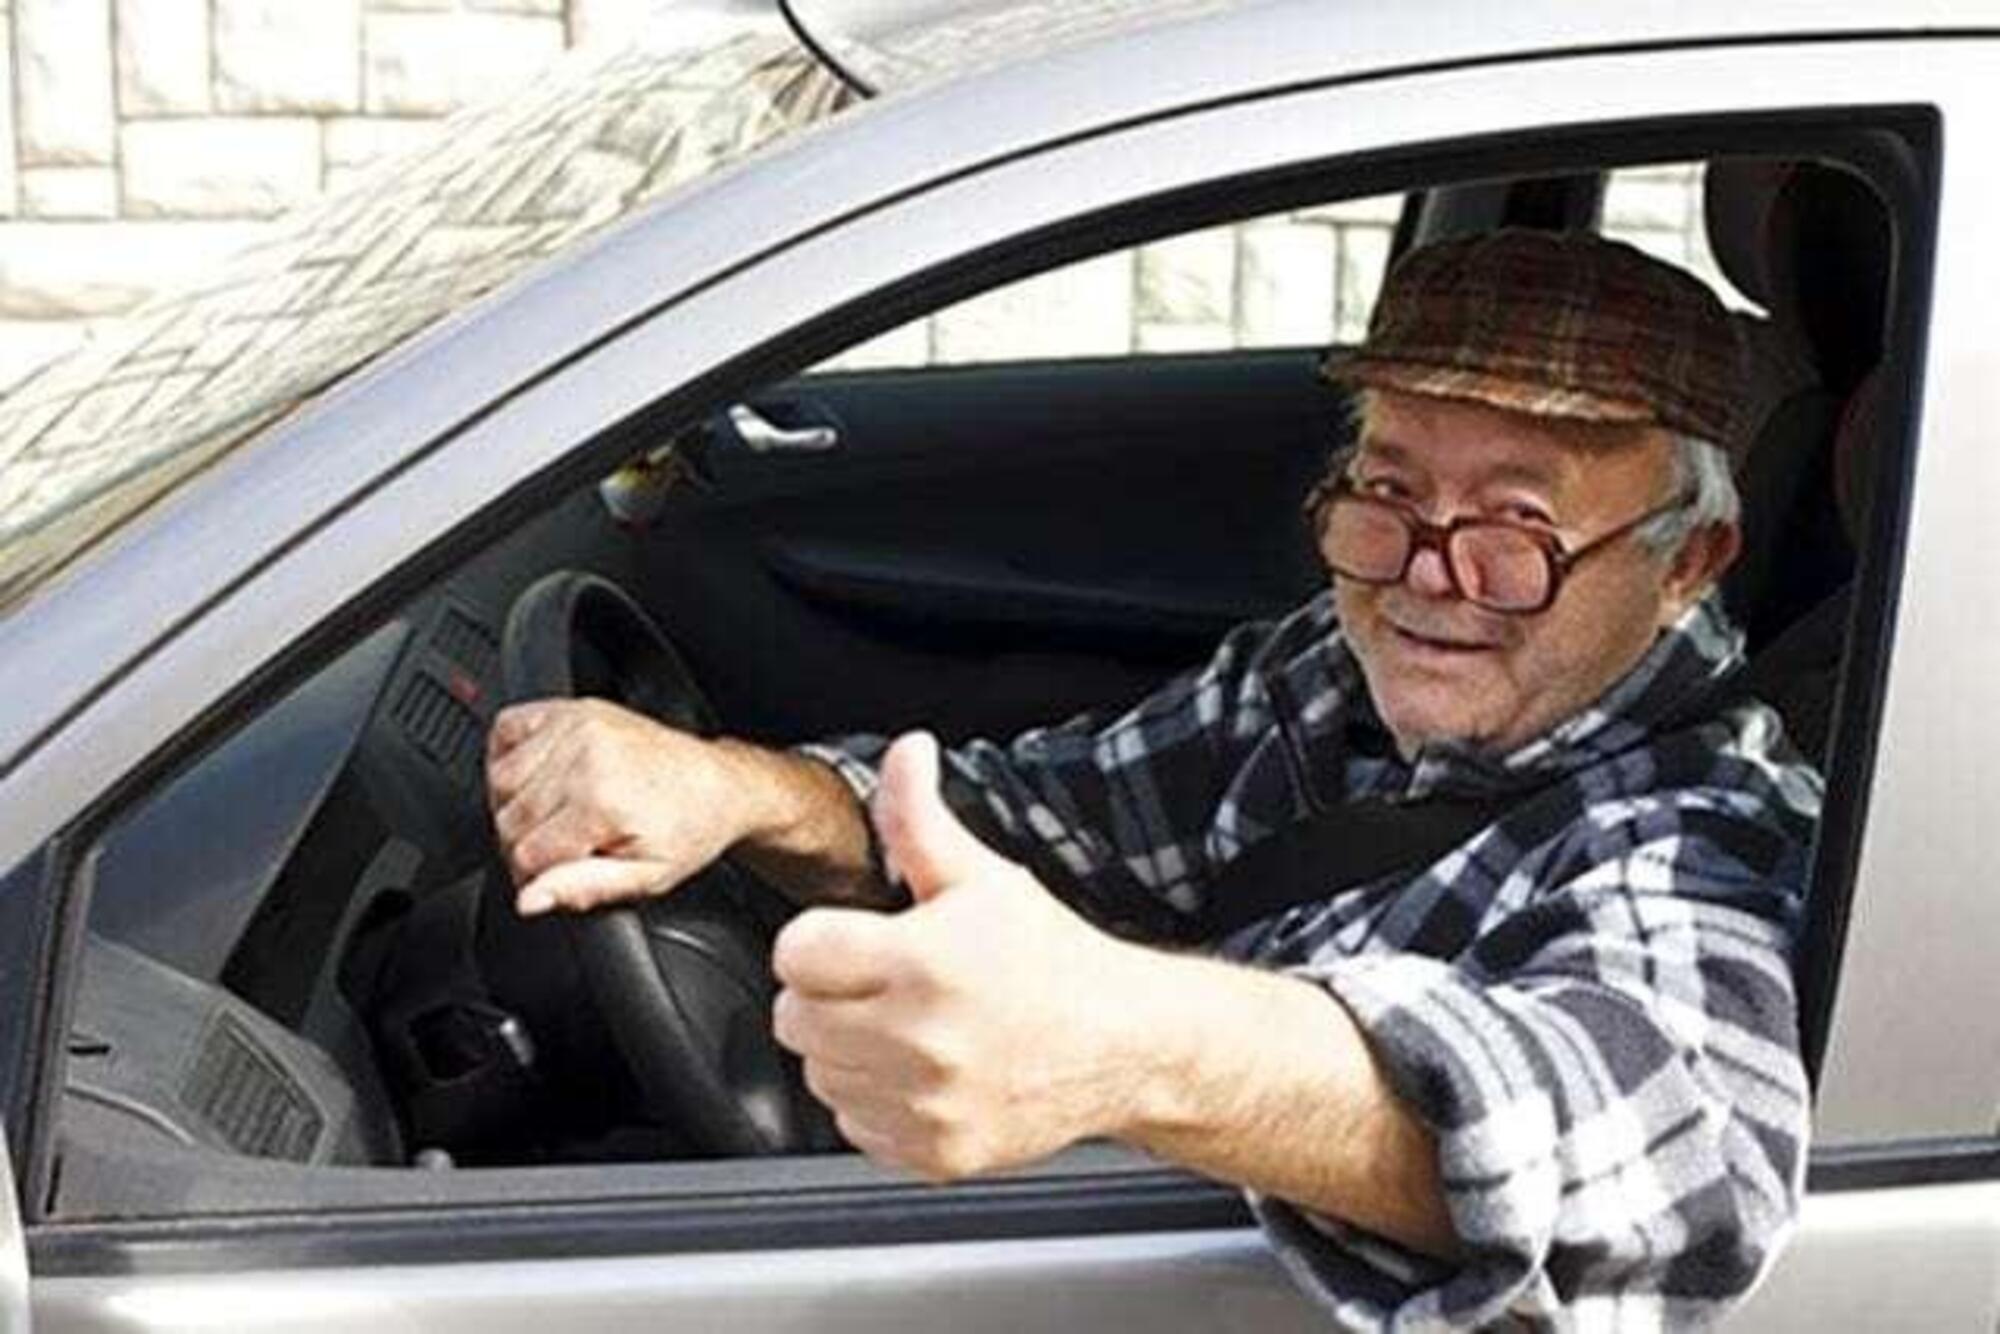 Anziano al volante, pericolo costante